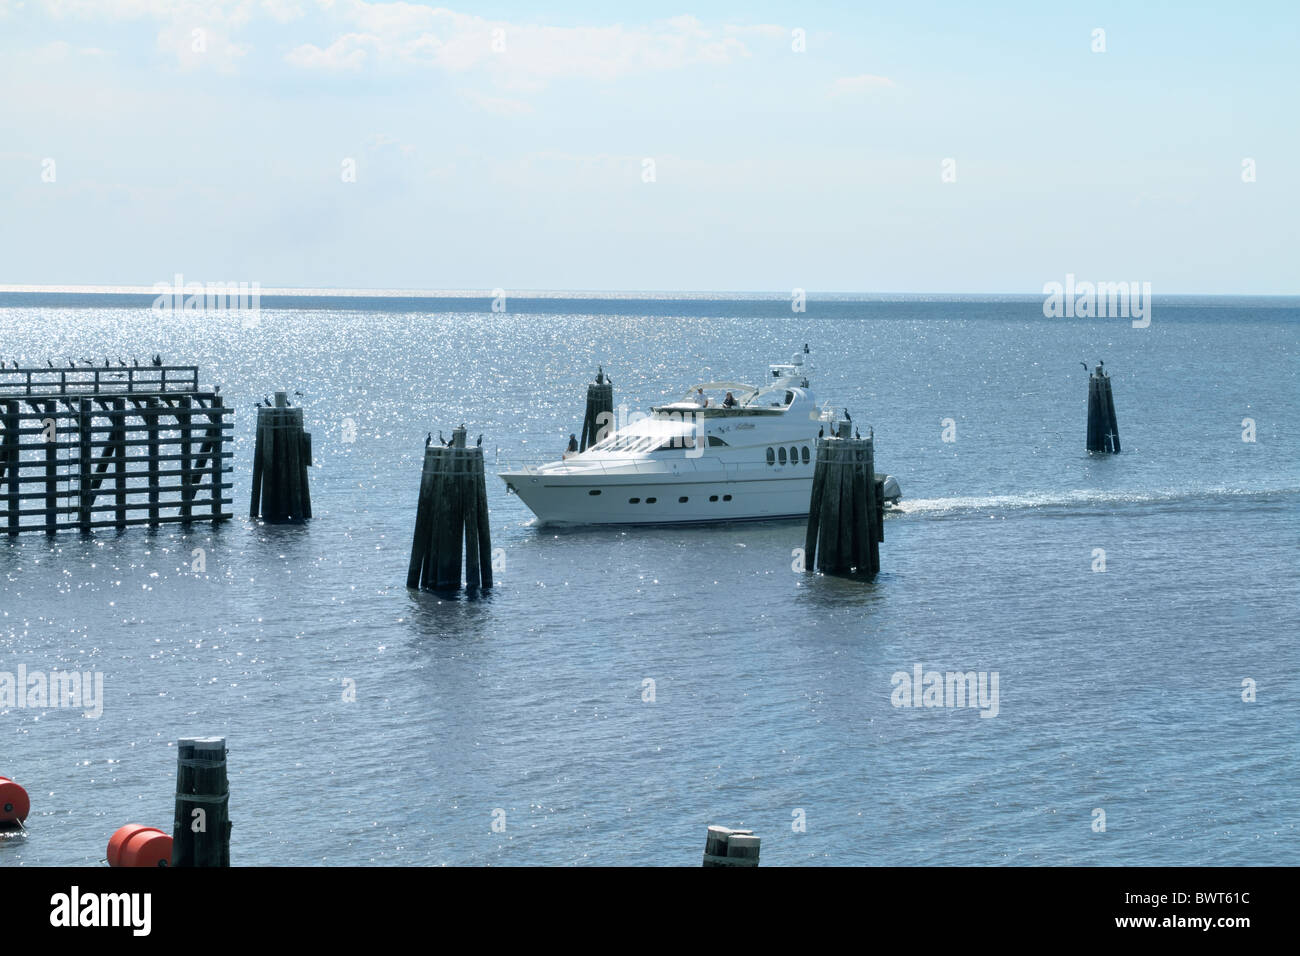 Avis de luxury yacht sur le lac Okeechobee, et à l'approche de blocage de port Mayaca et barrage. En Floride, aux États-Unis. Banque D'Images